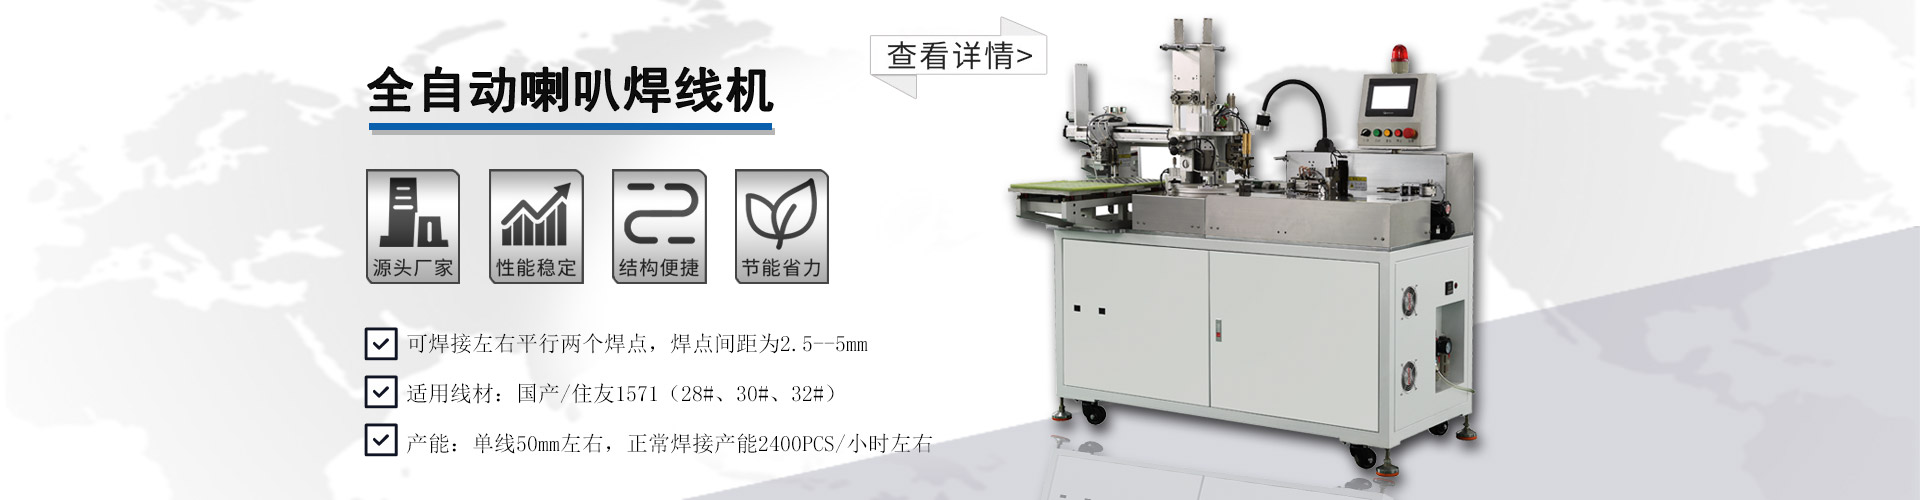 企业購(gòu)买自动焊線(xiàn)机时，必须考虑的几点因素(图1)